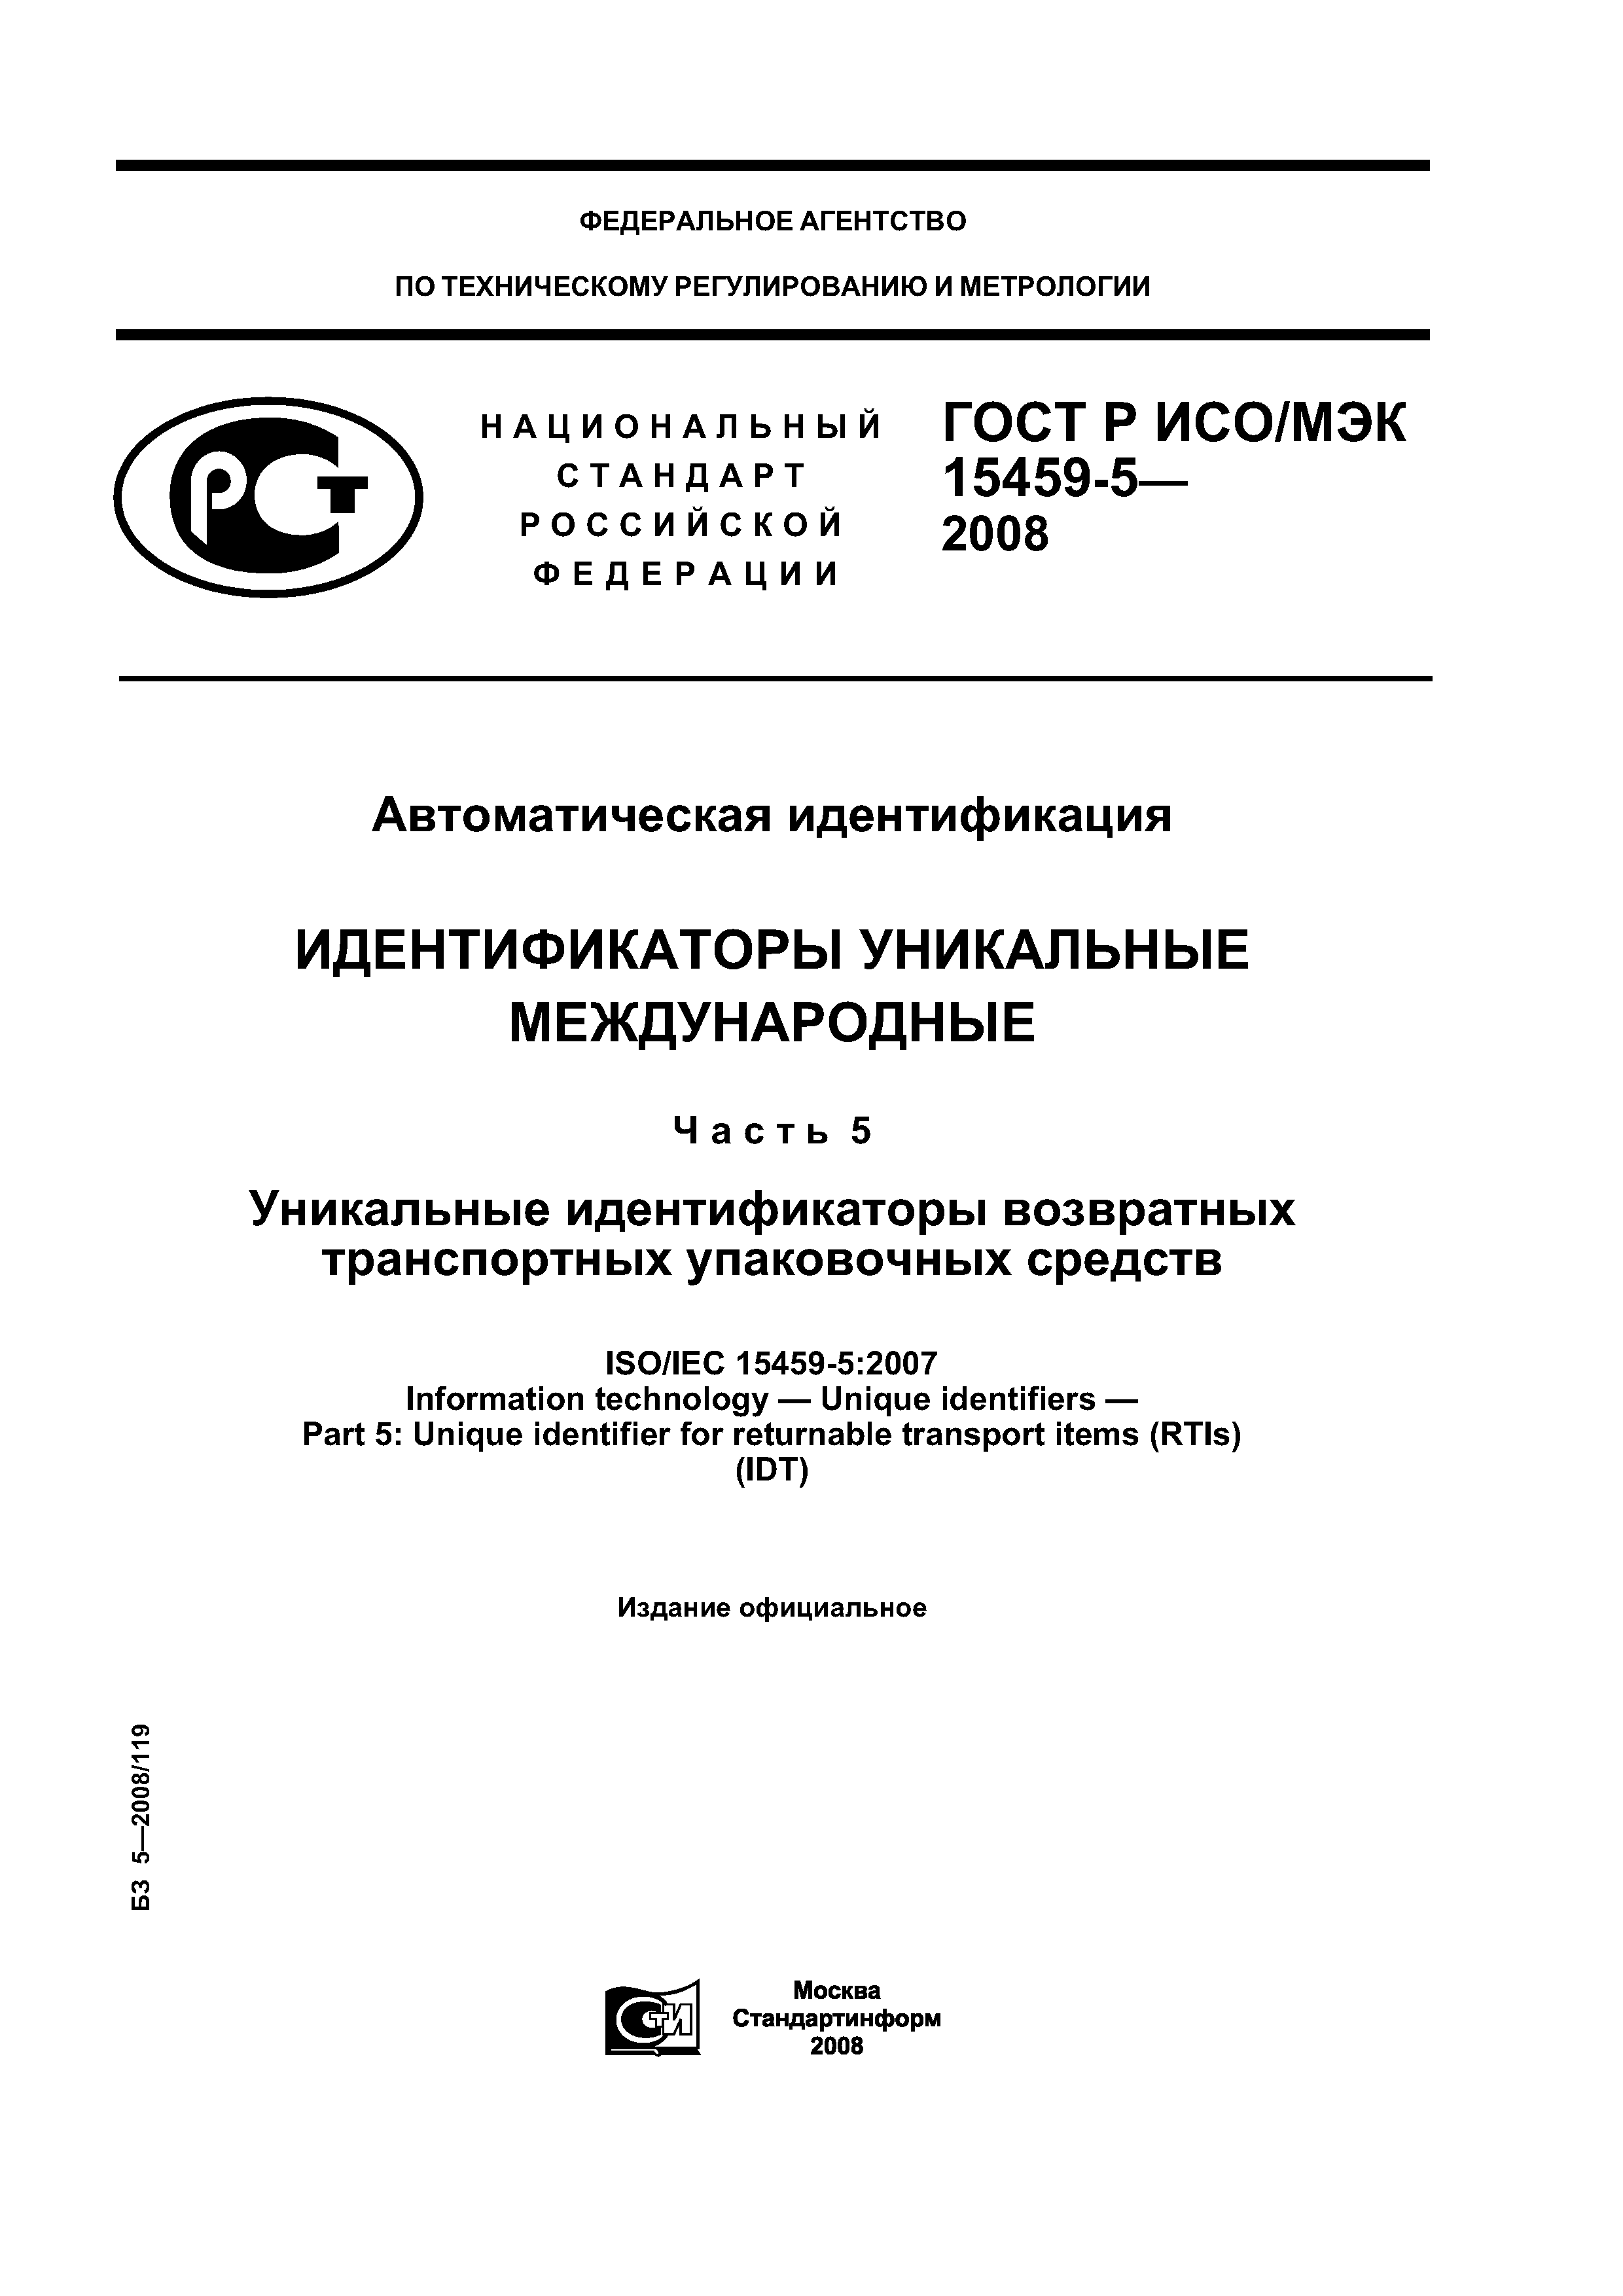 ГОСТ Р ИСО/МЭК 15459-5-2008